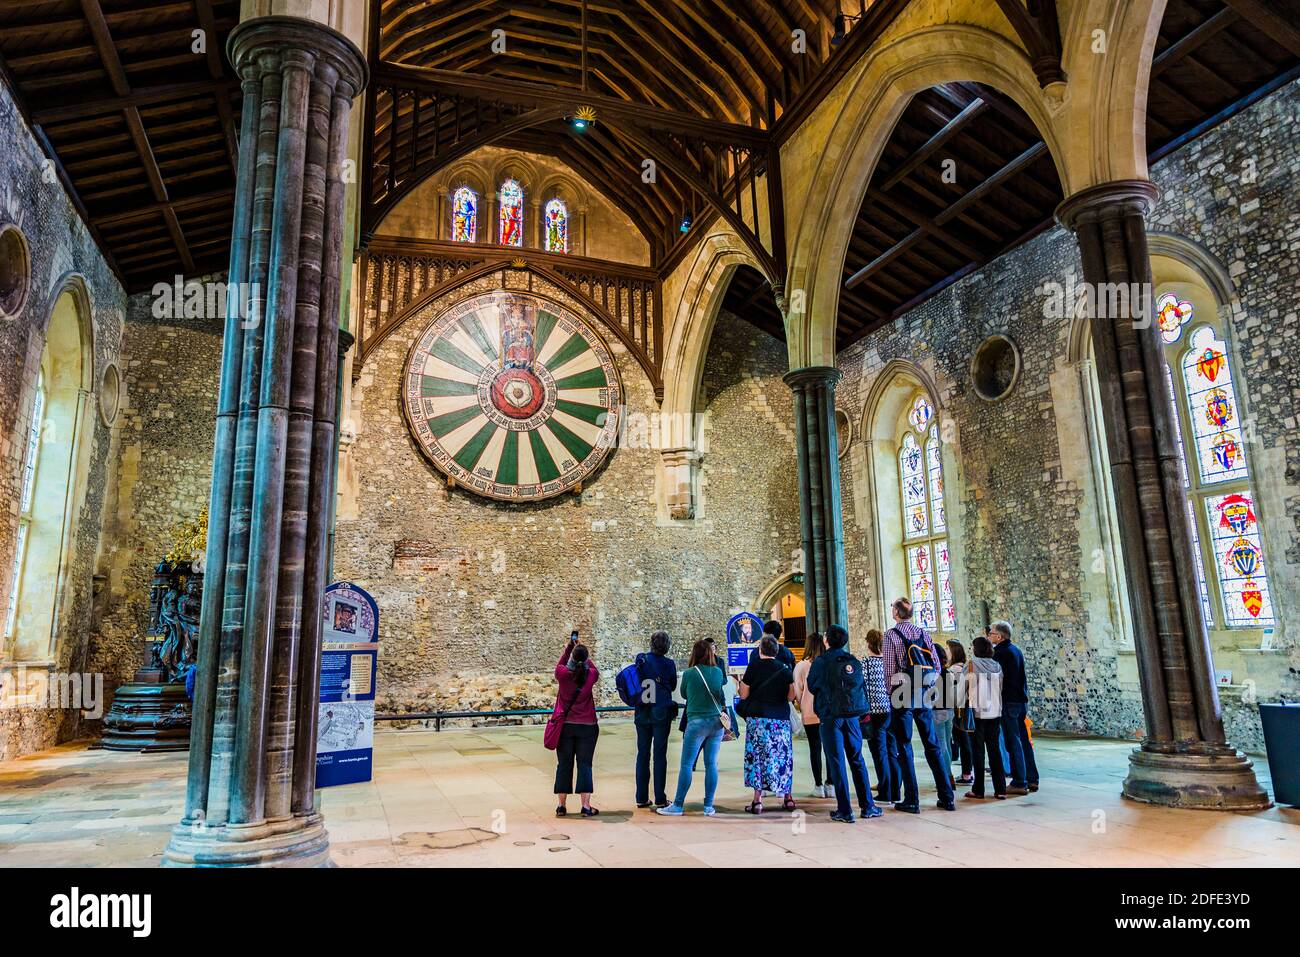 Winchester Round Table nella Great Hall, una replica medievale della leggendaria tavola di Re Artù. Winchester, Hampshire, Inghilterra, Regno Unito, Europa Foto Stock